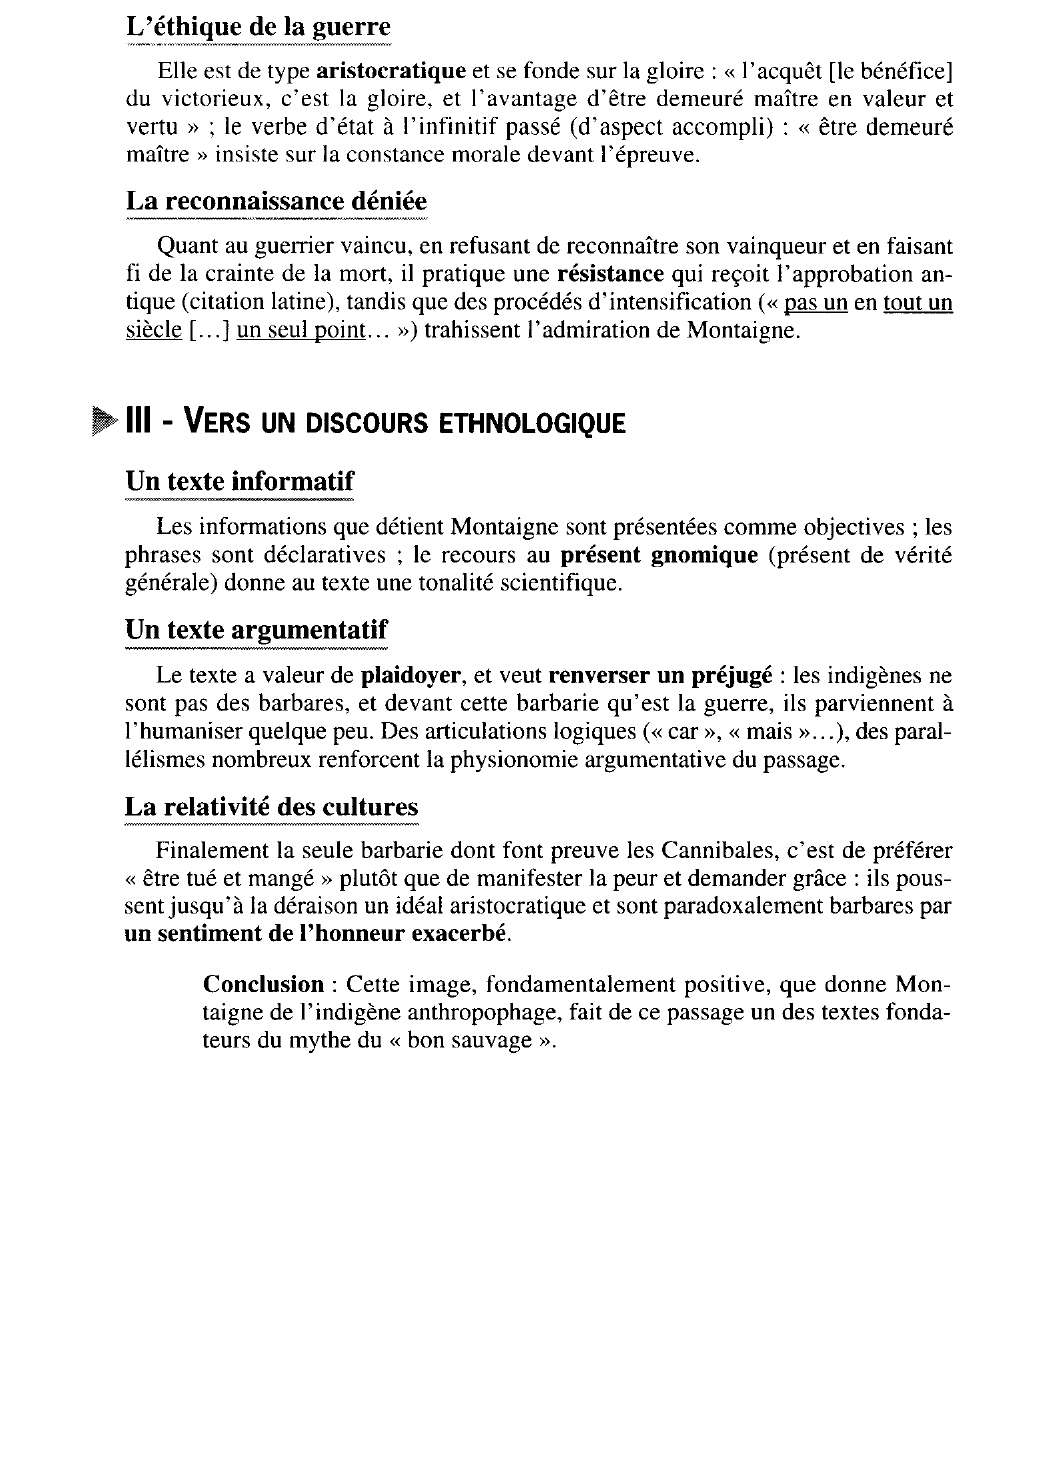 Prévisualisation du document Analyse d'une séquence « Des Cannibales » : I, 31, pp. 309-310